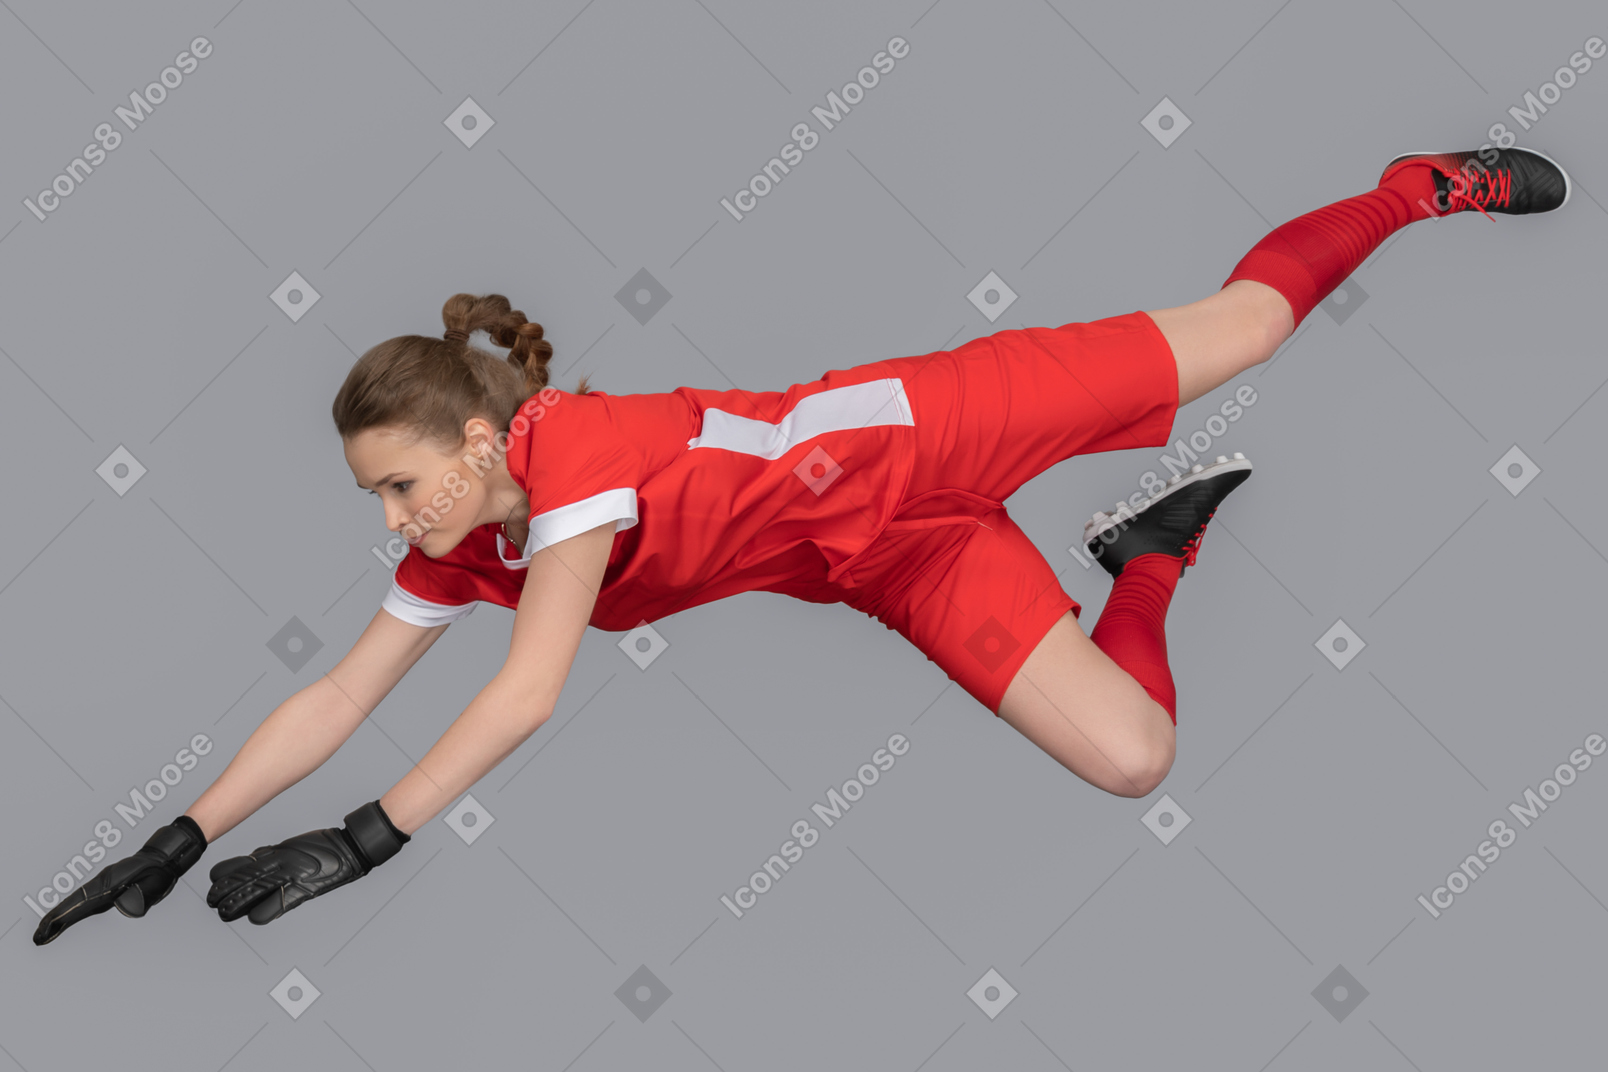 A female goalkeeper in the air